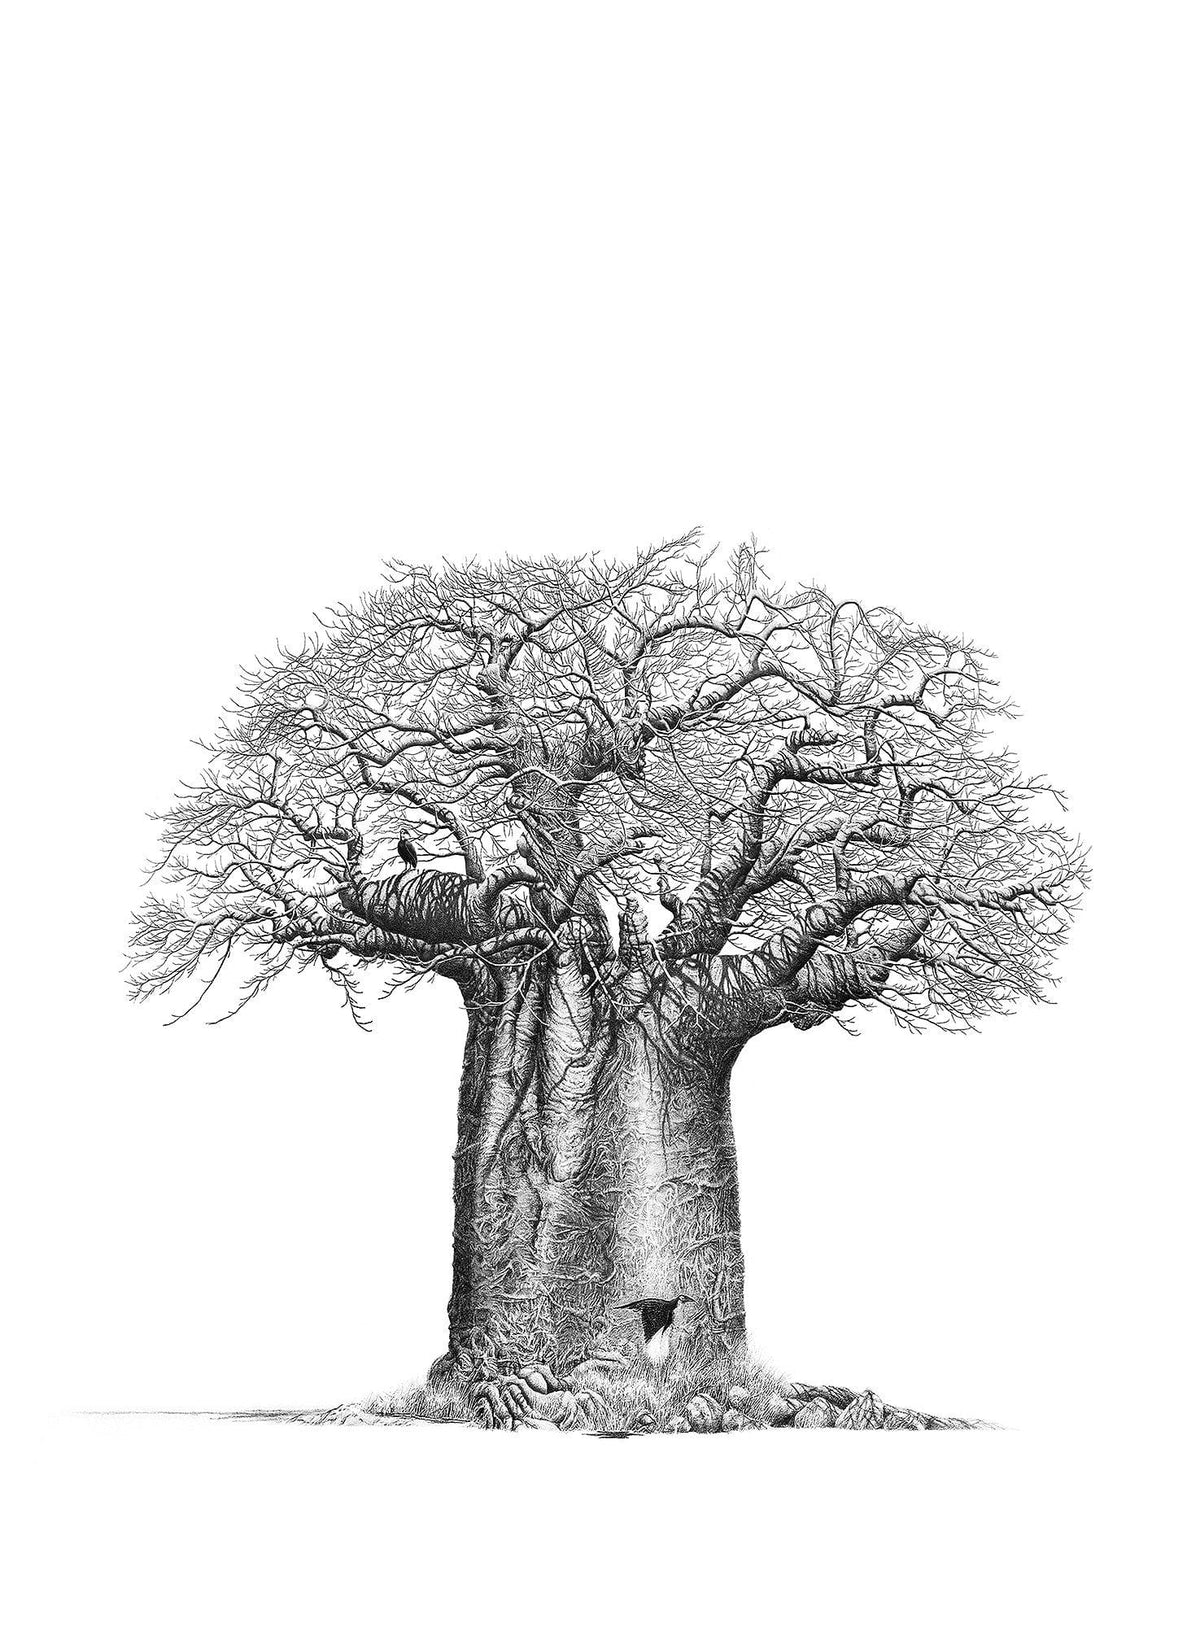 Baobab Tree Still Life with Hornbill Fine Art Portfolio